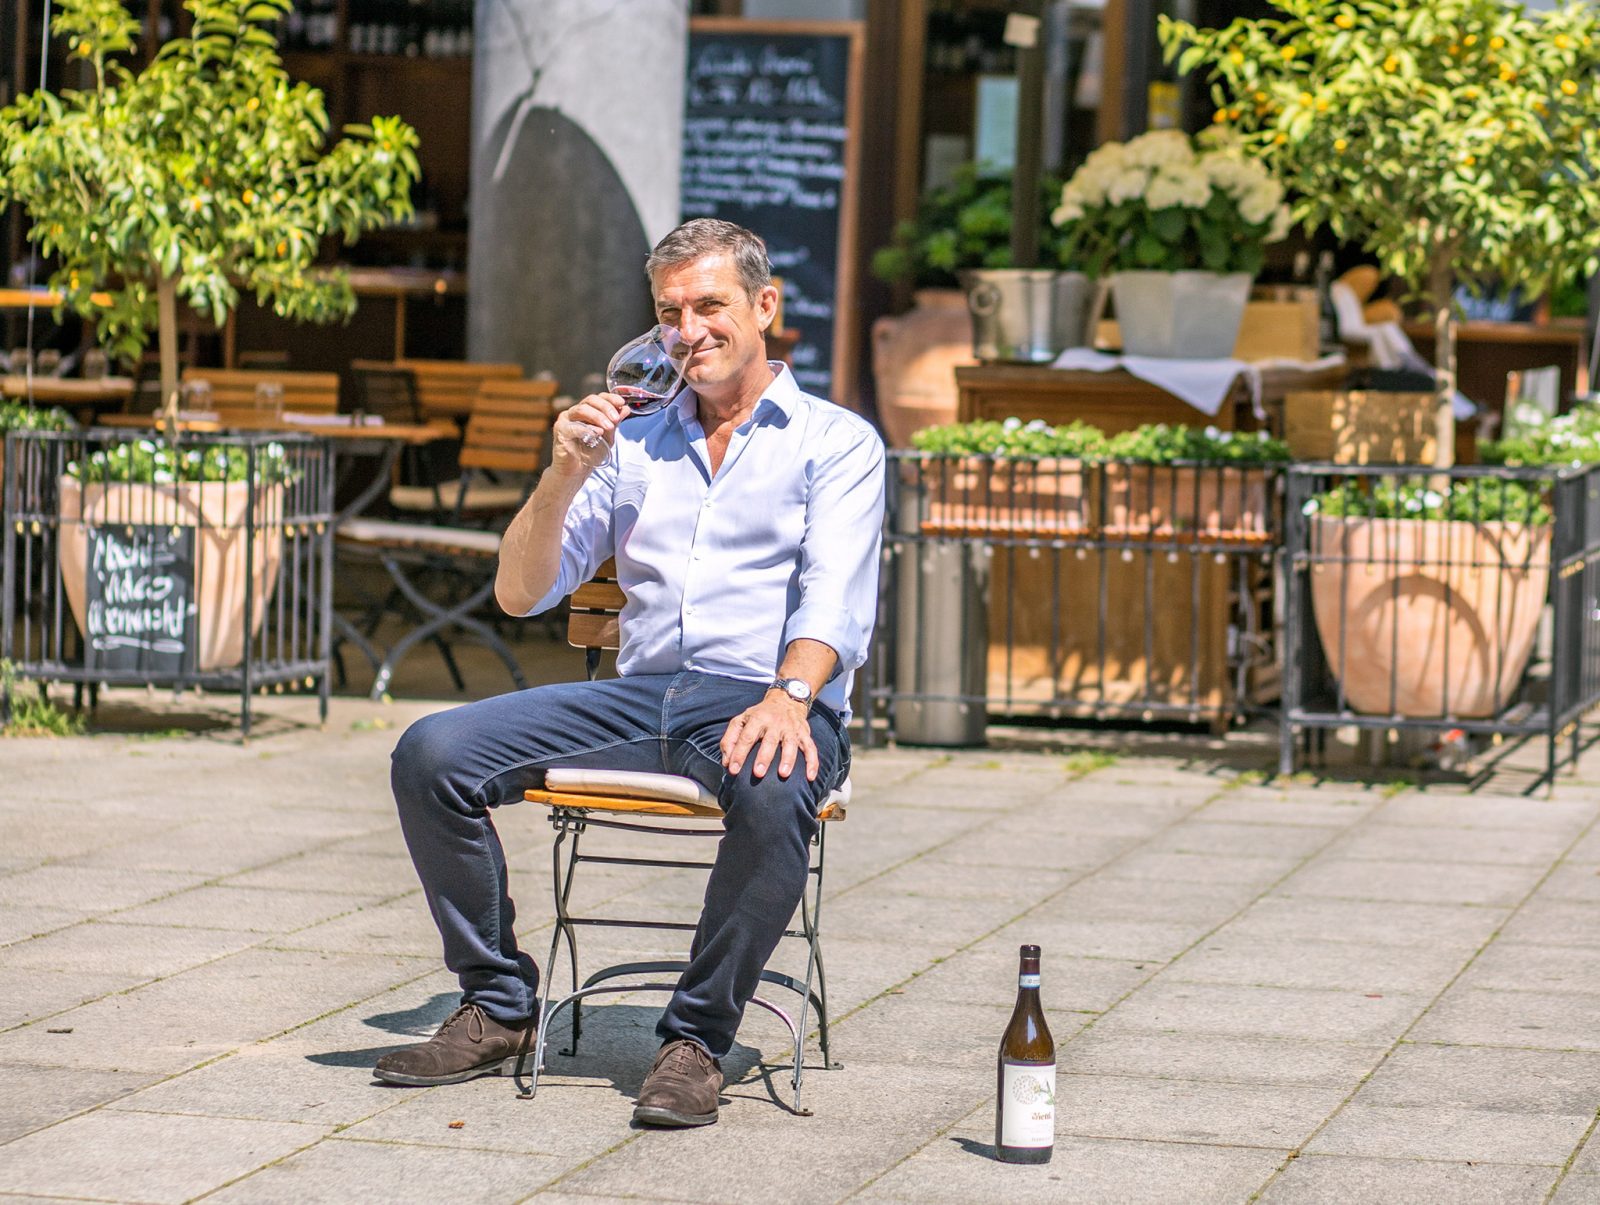 Der Chef macht's vor: Antonio Bragato zeigt auf unserem Foto selbst, wie man im Il Calice den Sommer genießt. Er sitzt mit einem Glas Wein auf einem Stuhl auf dem Platz. Trinken in der Sonne und am Wasser